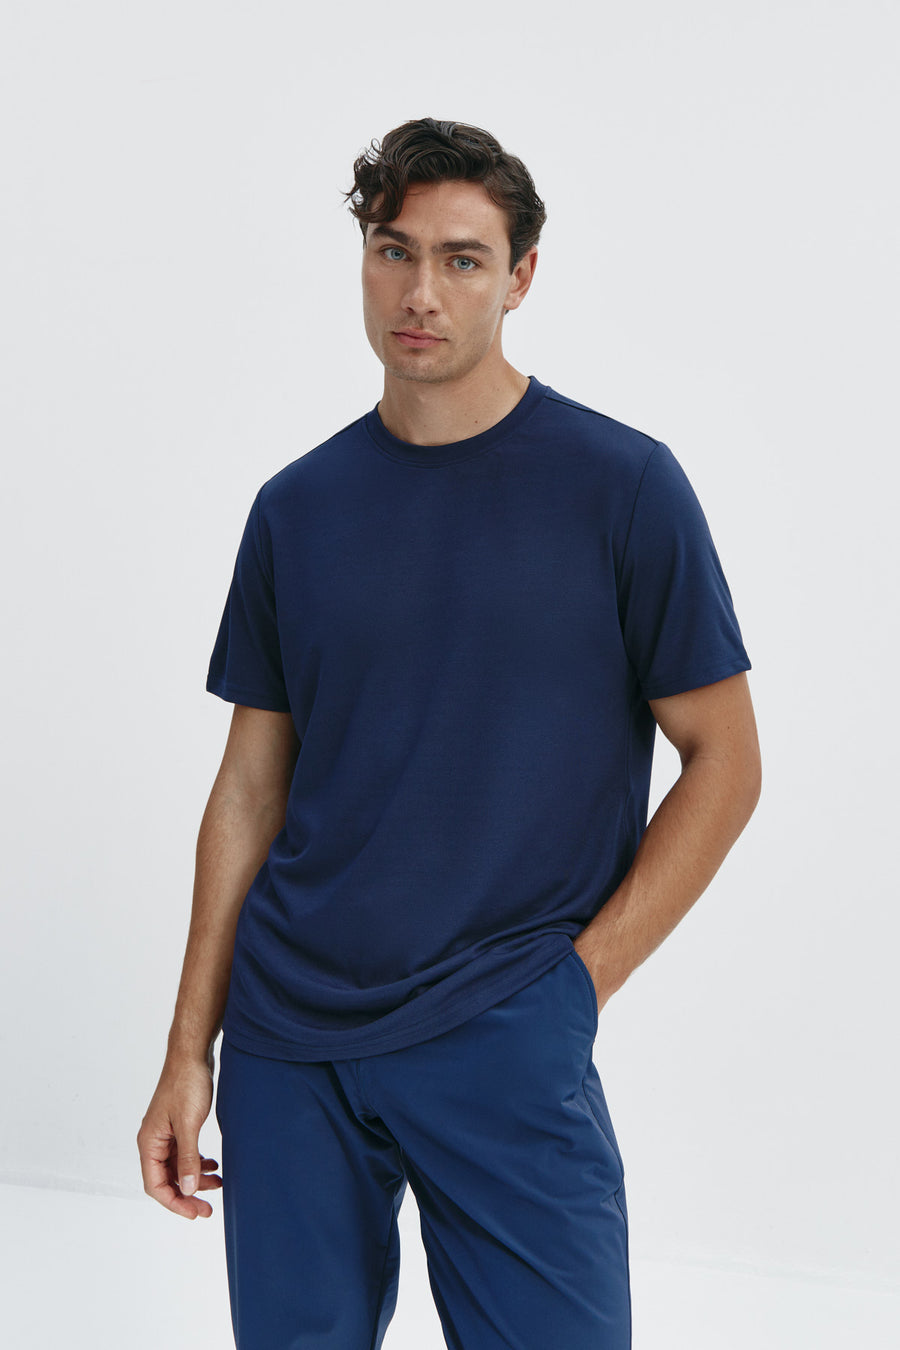 Camiseta de hombre azul zafiro: Camiseta de hombre azul zafiro de manga corta, antiarrugas y antimanchas. Foto frente